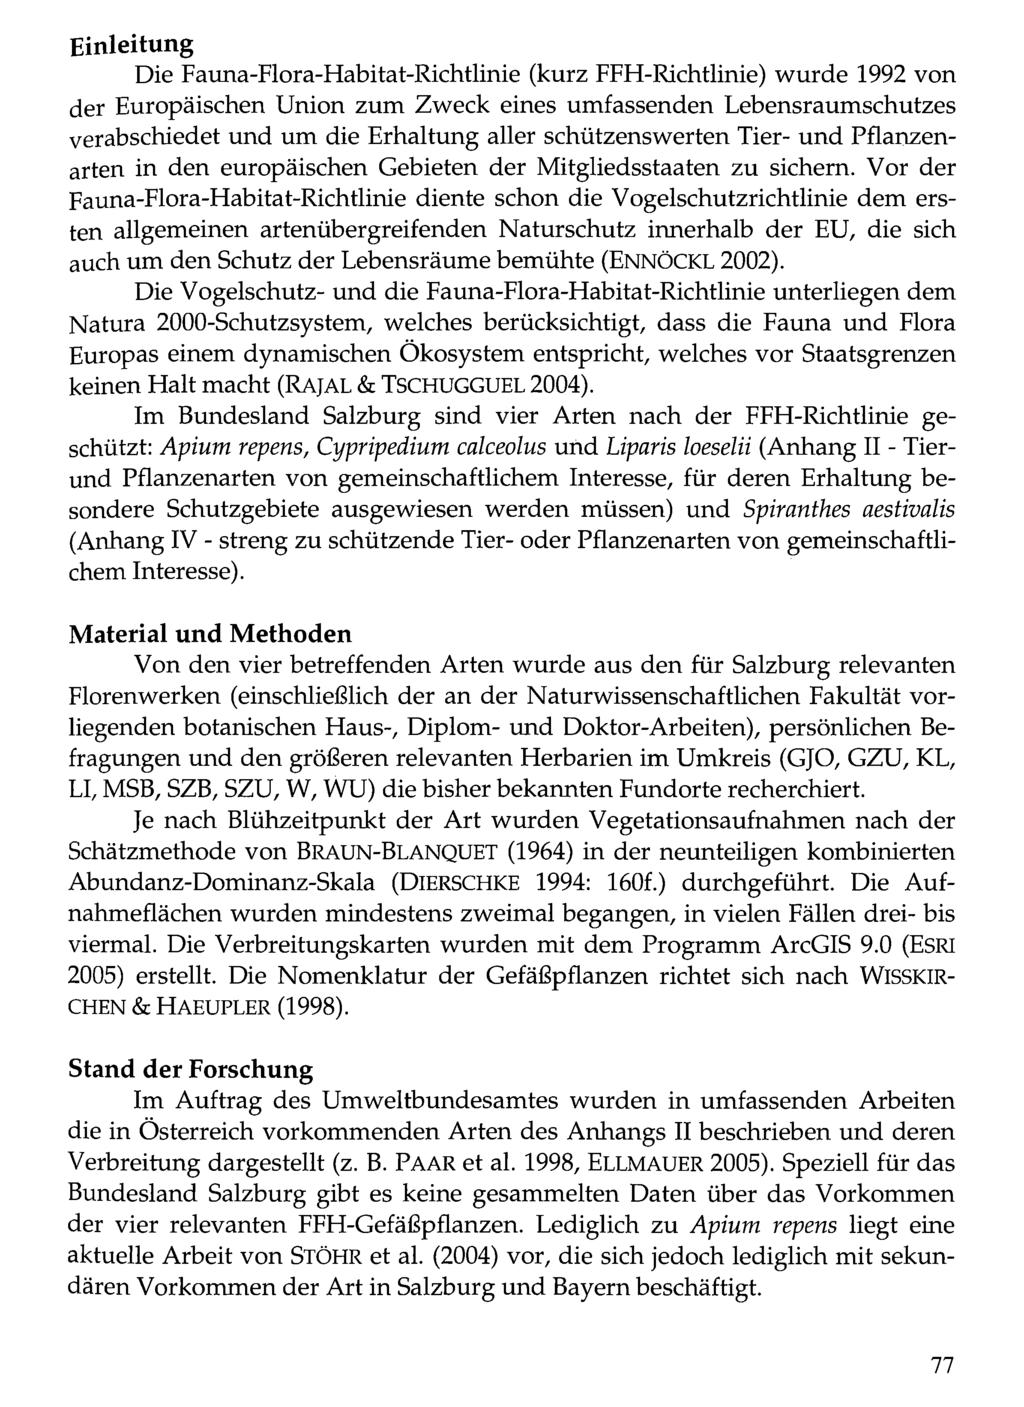 Einleitung Verlag Alexander Just: Dorfbeuern - Salzburg - Brüssel; download unter www.biologiezentrum.